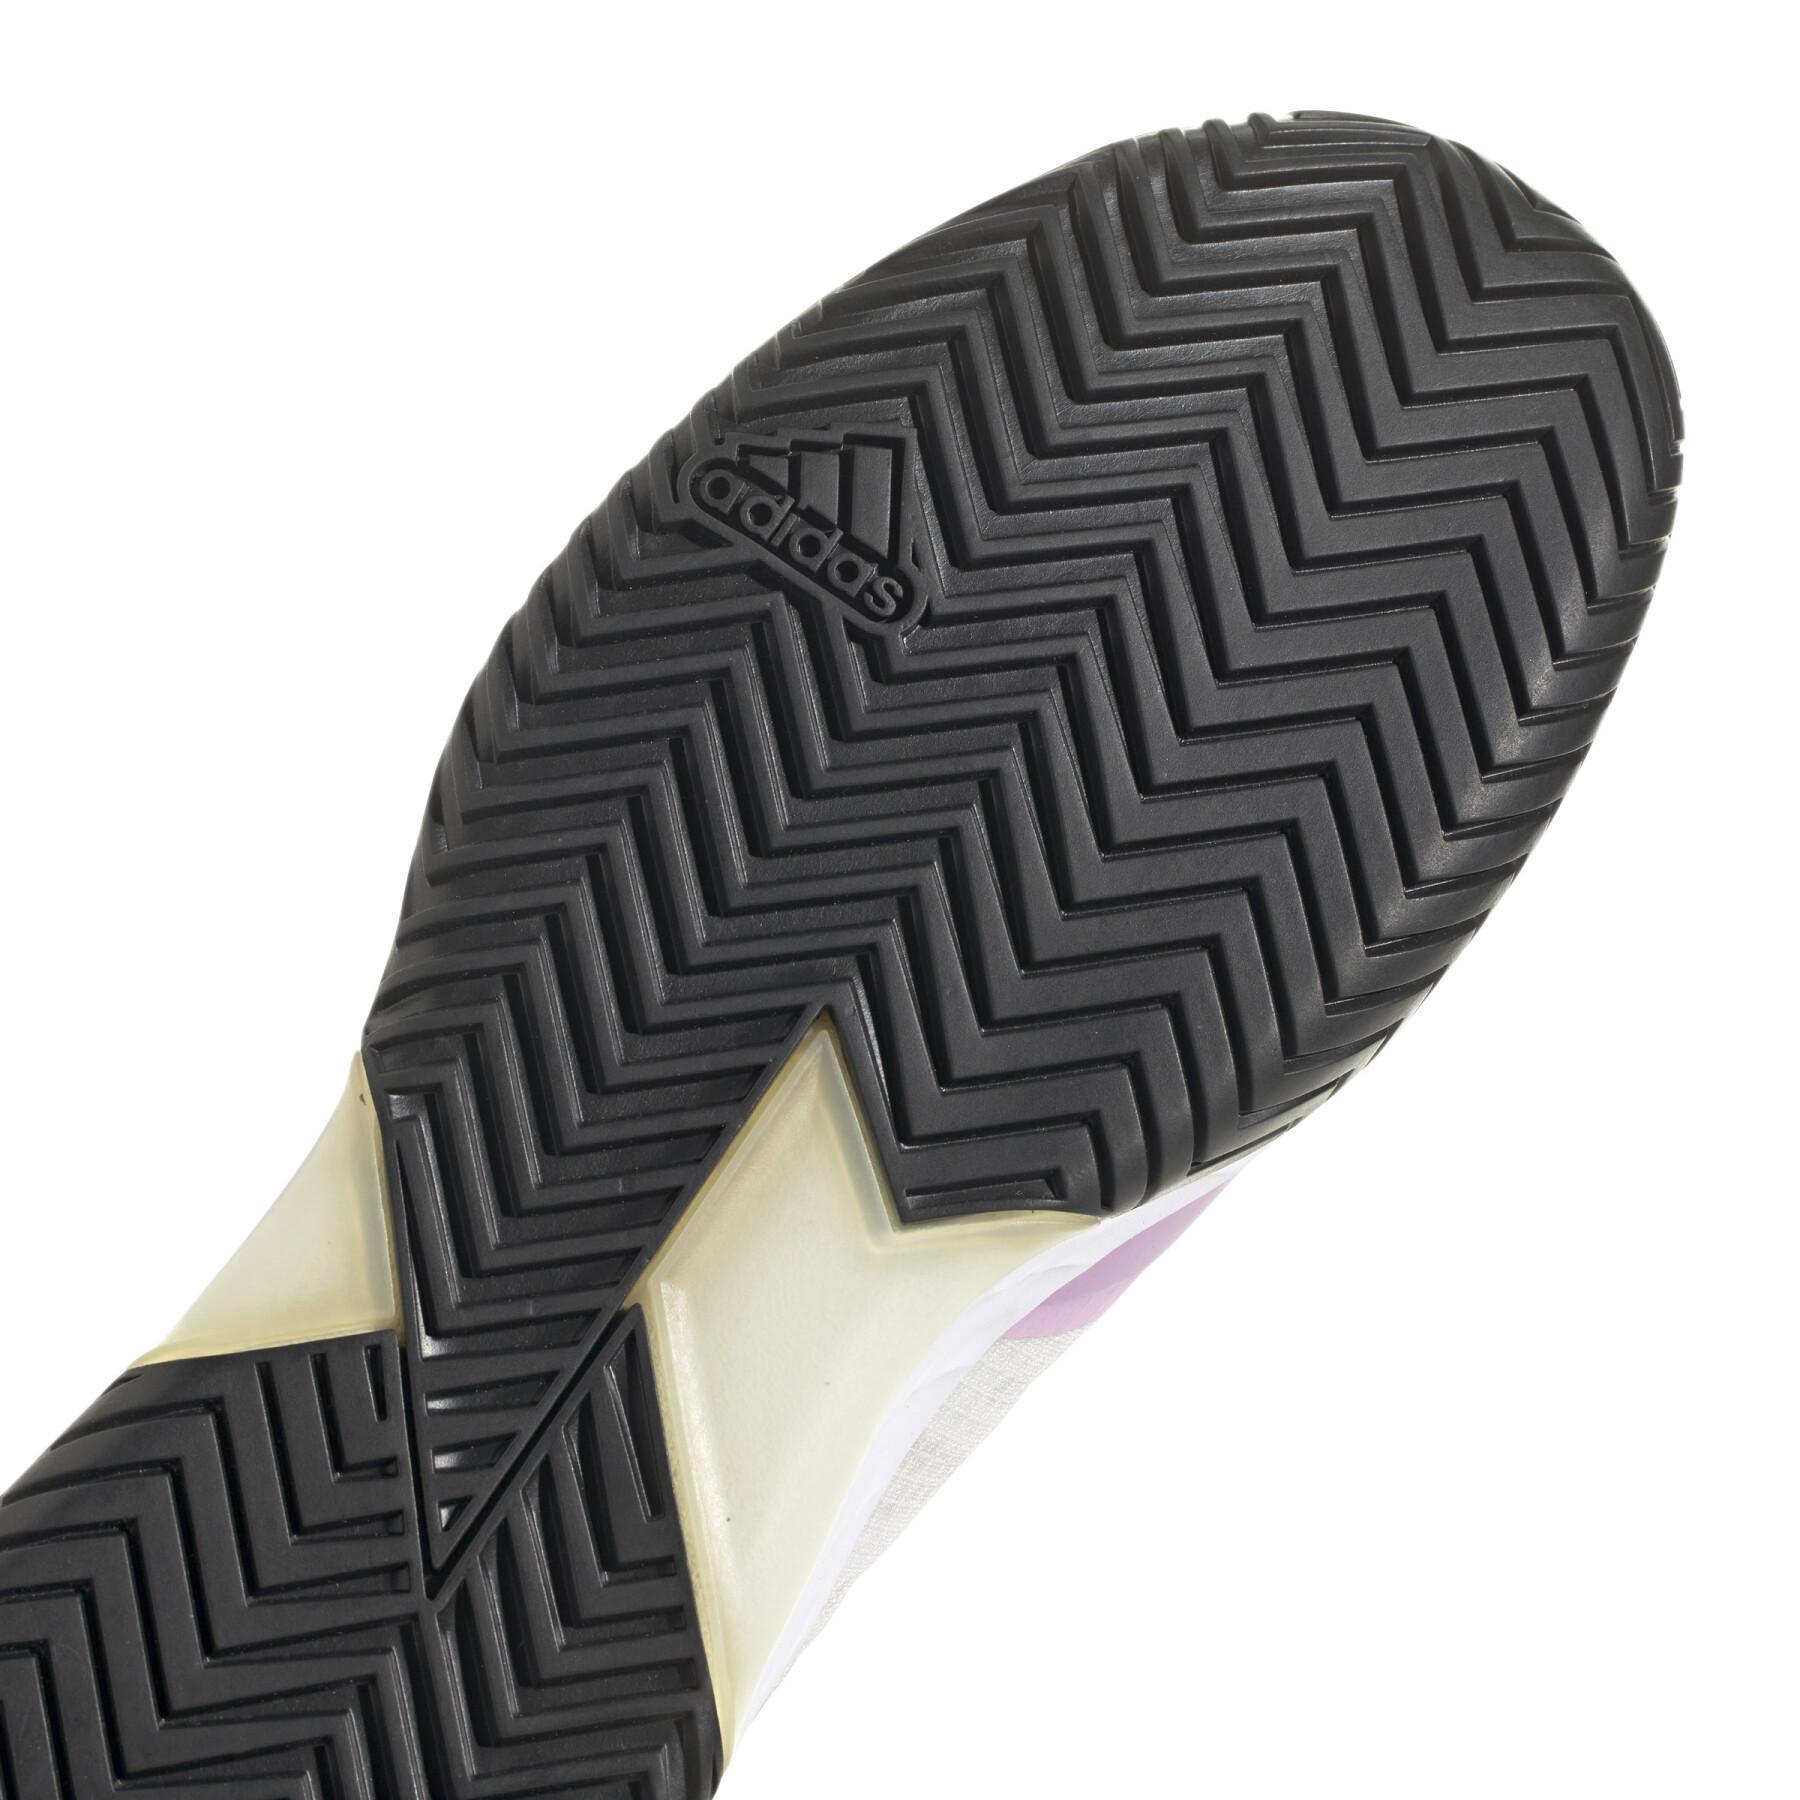 Zapatillas de tenis adidas Adizero Ubersonic 4